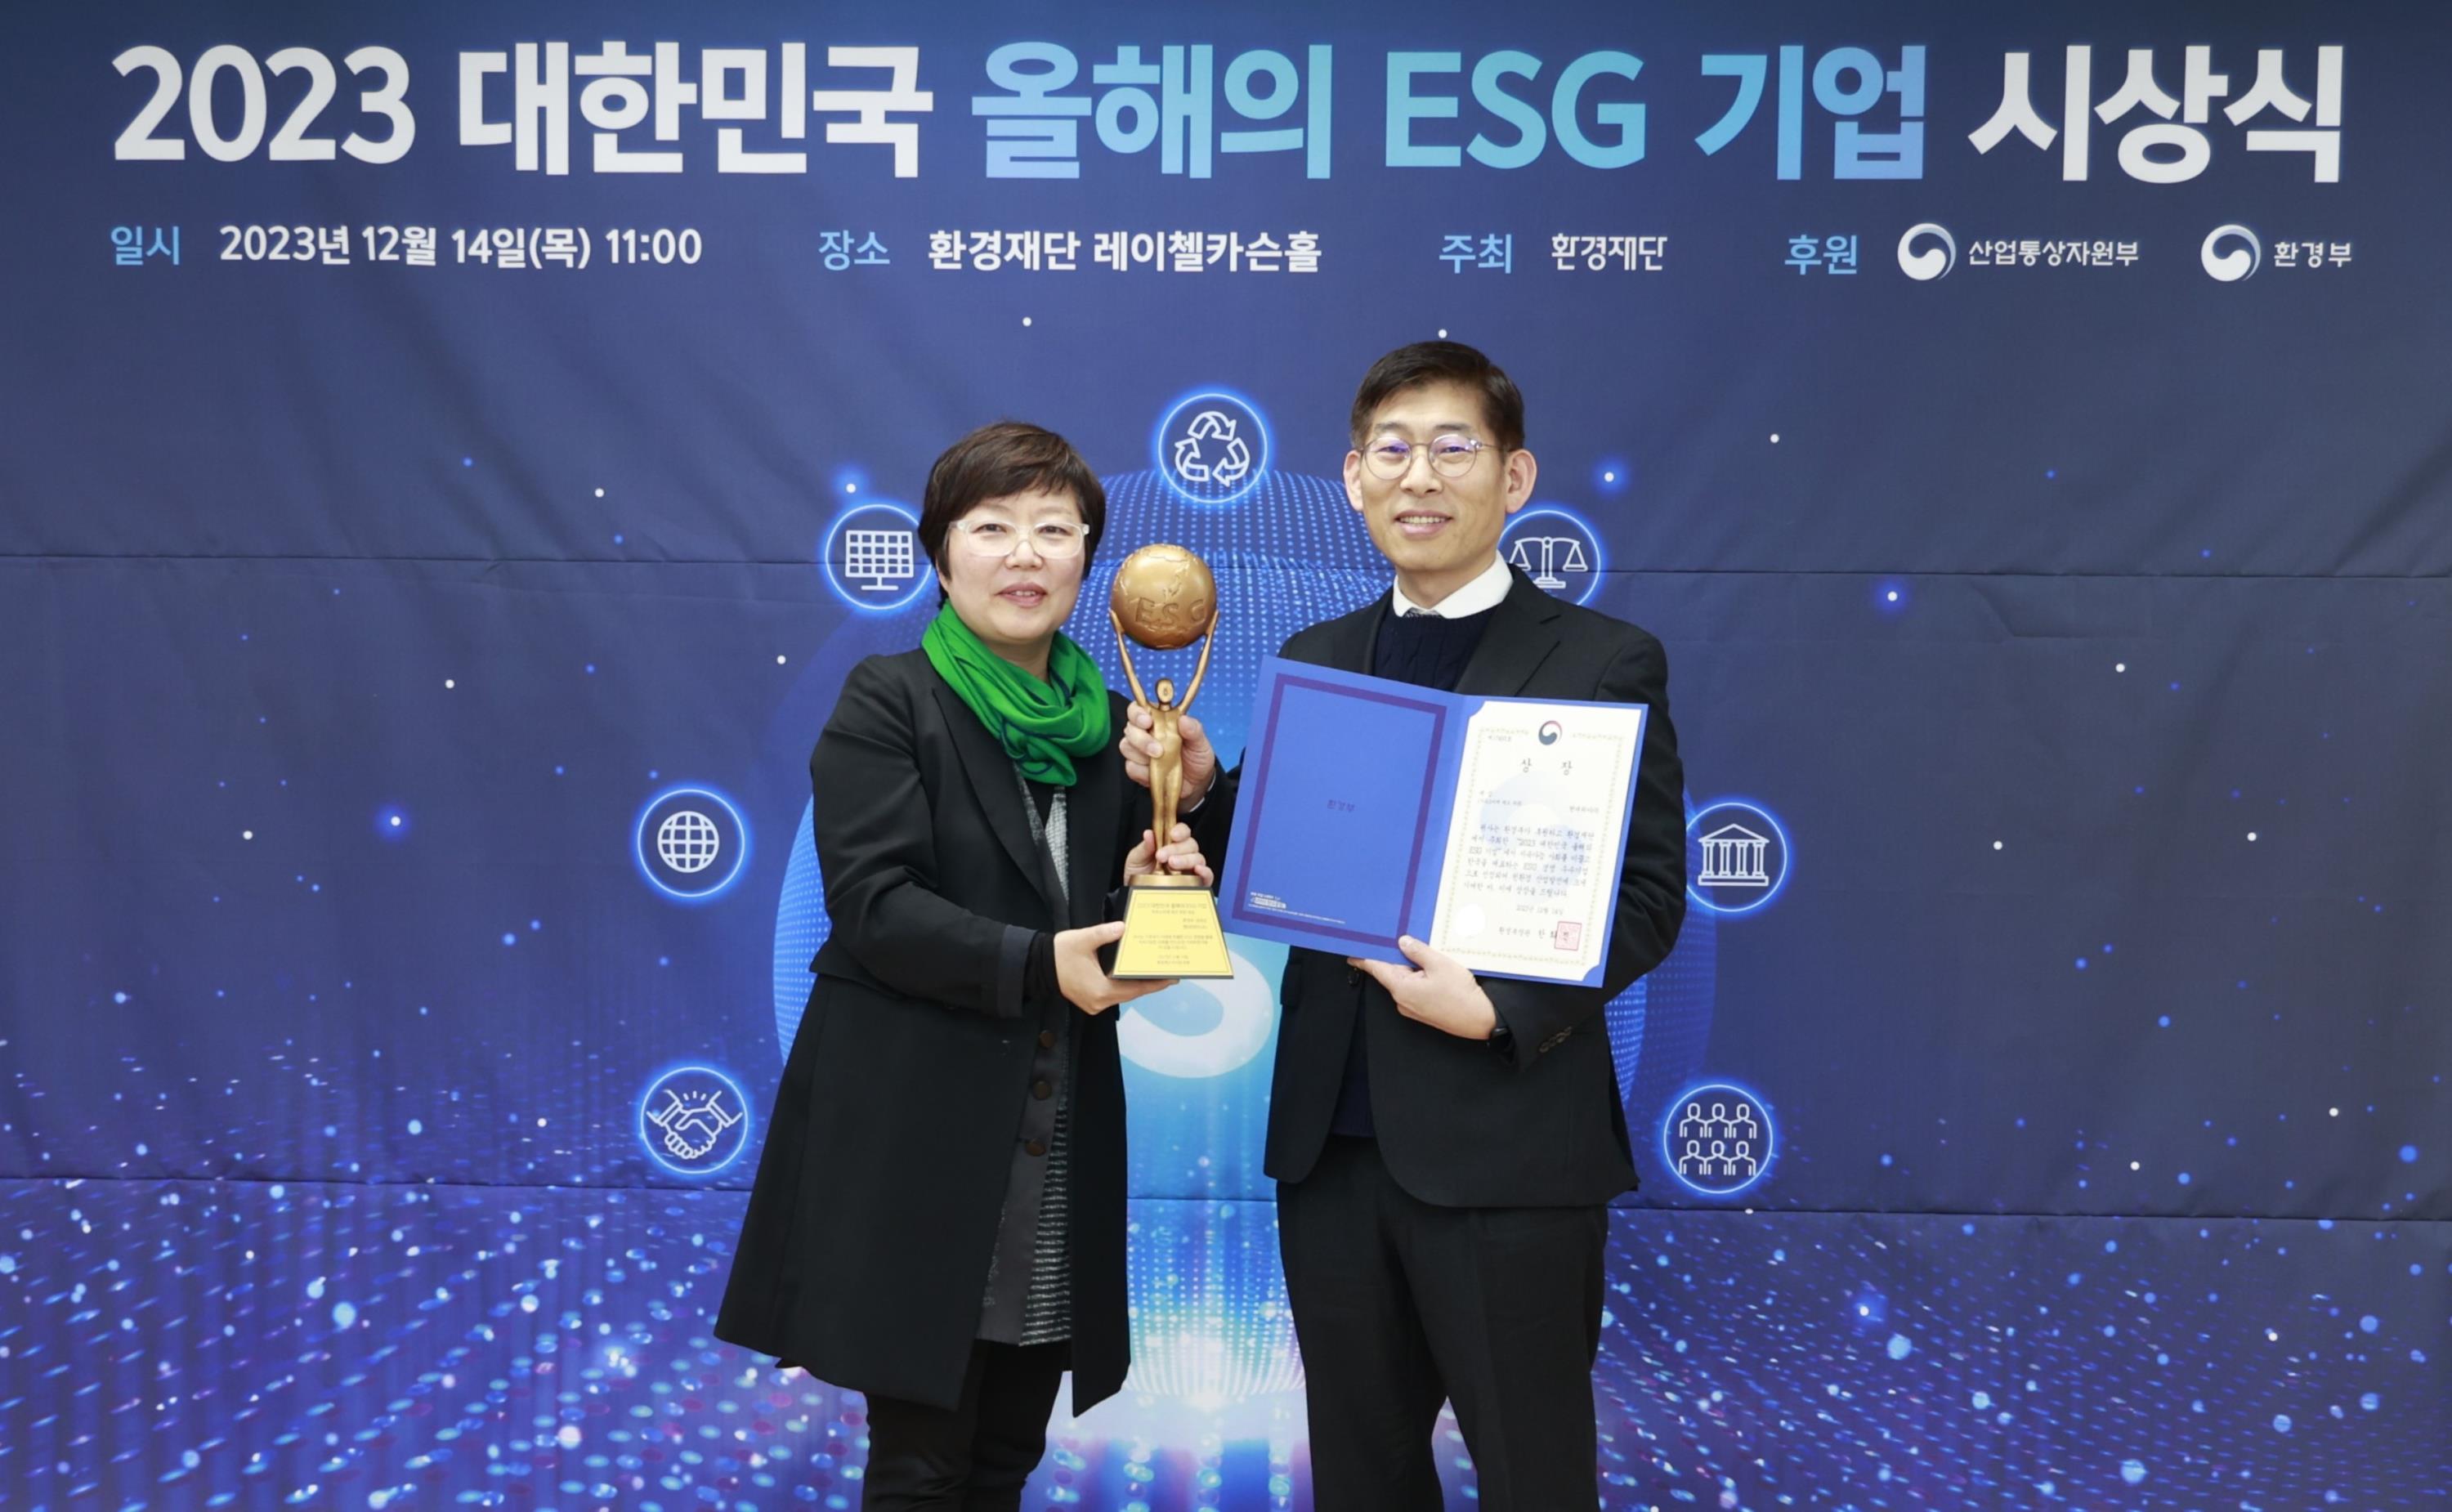 현대위아 이정욱 상무(오른쪽)와 환경재단 이미경 대표가 14일 서울시 중구 환경재단에서 열린 '2023 대한민국 올해의 ESG 기업 시상식'에서 환경부 장관상 수상 기념 사진을 찍고 있다.